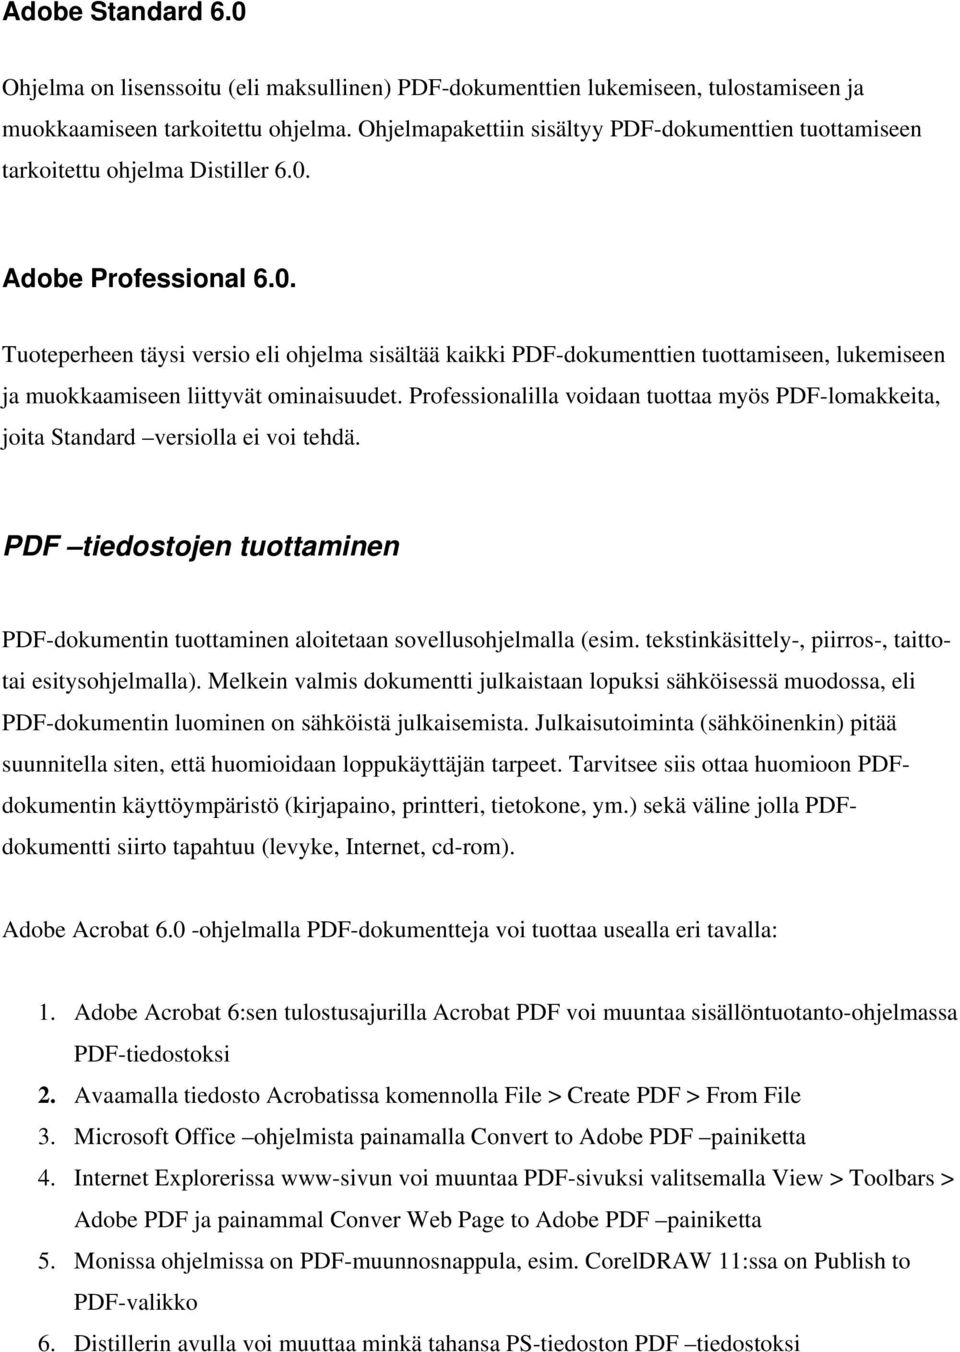 Adobe Professional 6.0. Tuoteperheen täysi versio eli ohjelma sisältää kaikki PDF-dokumenttien tuottamiseen, lukemiseen ja muokkaamiseen liittyvät ominaisuudet.